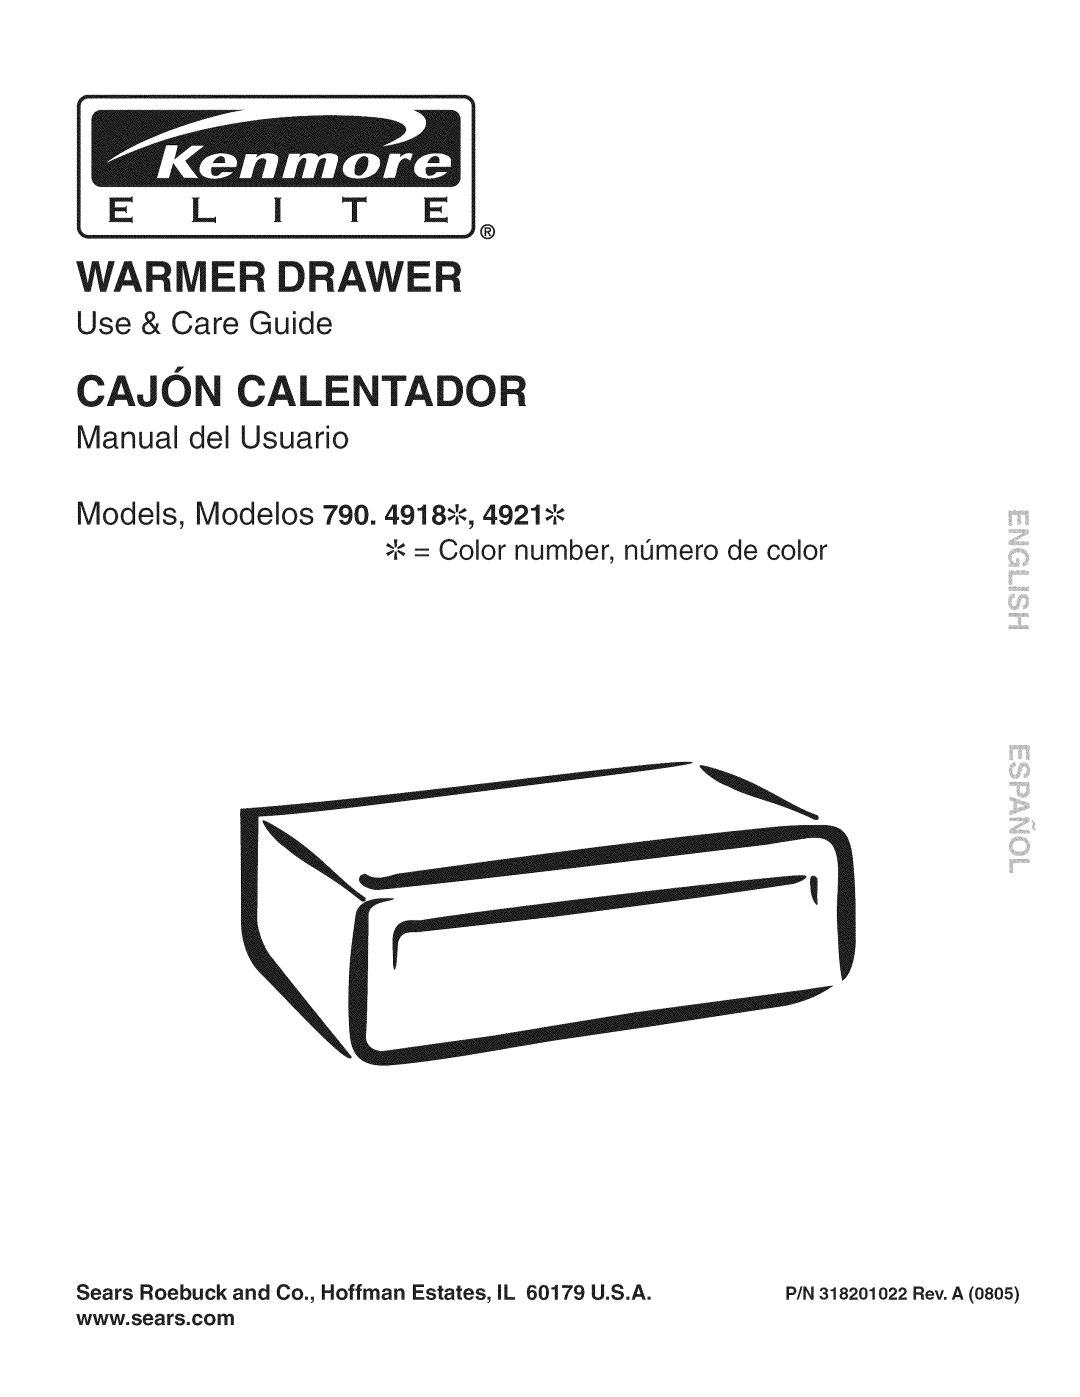 Kenmore 790.4921 manual Use & Care Guide, Manual del Usuario Models, Modelos 790. 491 o4921, Cajon Cale, E L I T E, ilii 